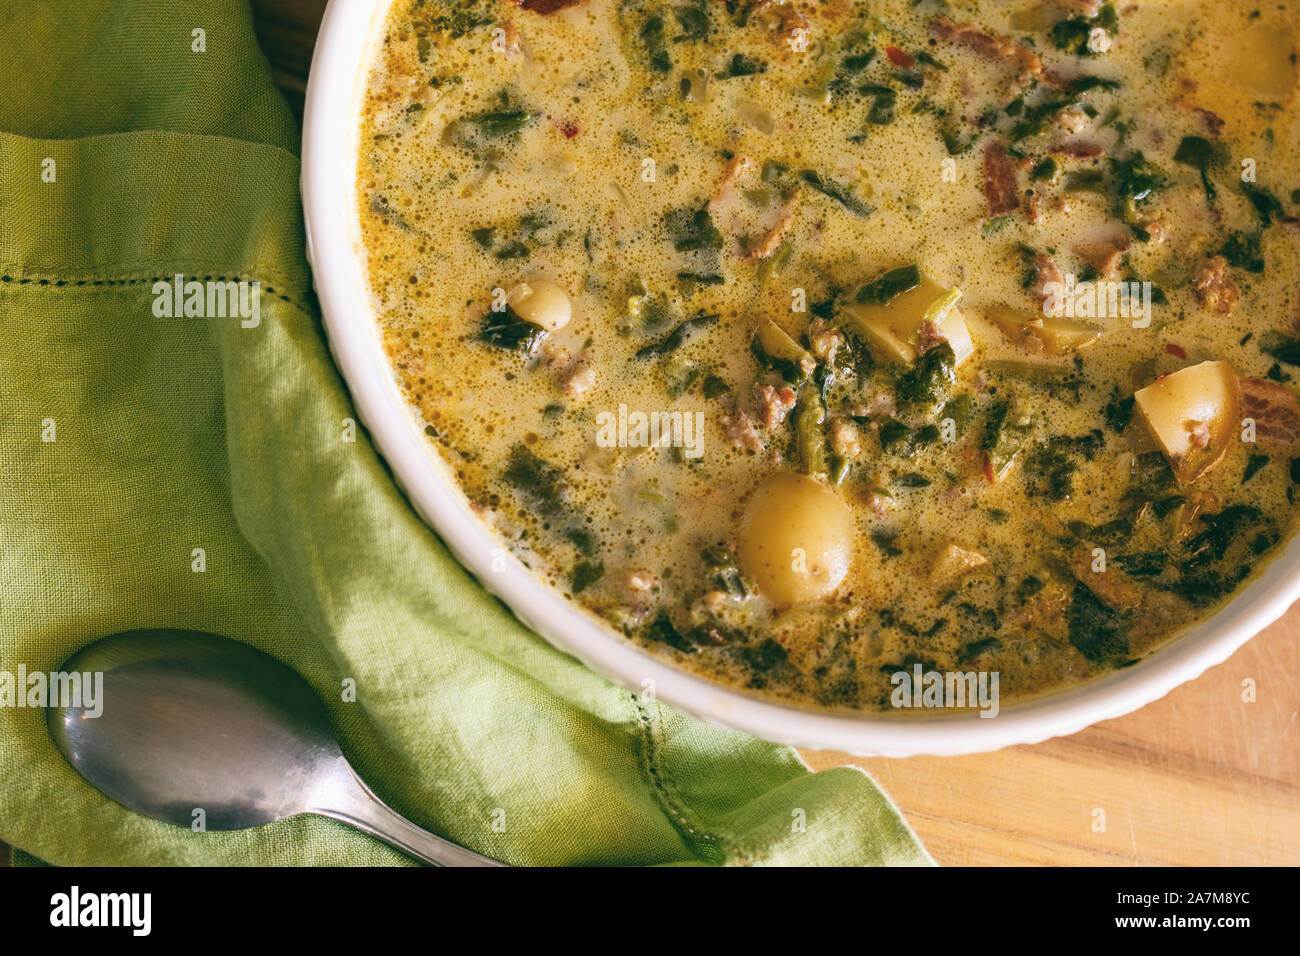 Un grand bol de Zuppa Toscana soup illustré avec serviette vert vif et cuillère. Ragoût toscan, cuisine italienne. Banque D'Images